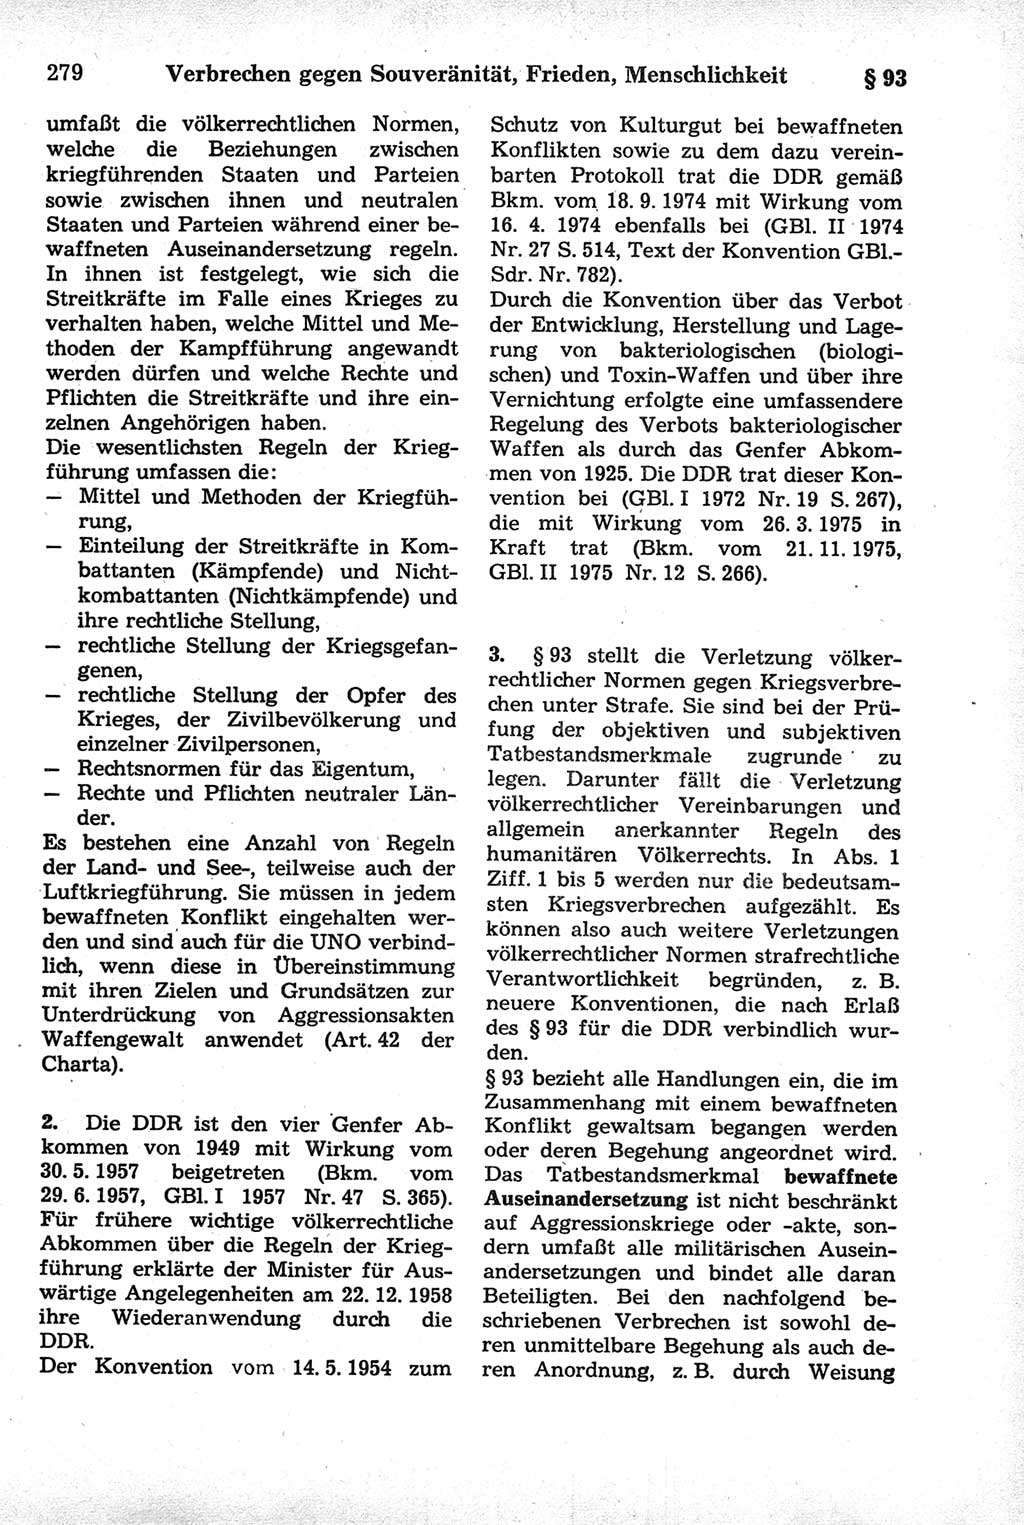 Strafrecht der Deutschen Demokratischen Republik (DDR), Kommentar zum Strafgesetzbuch (StGB) 1981, Seite 279 (Strafr. DDR Komm. StGB 1981, S. 279)